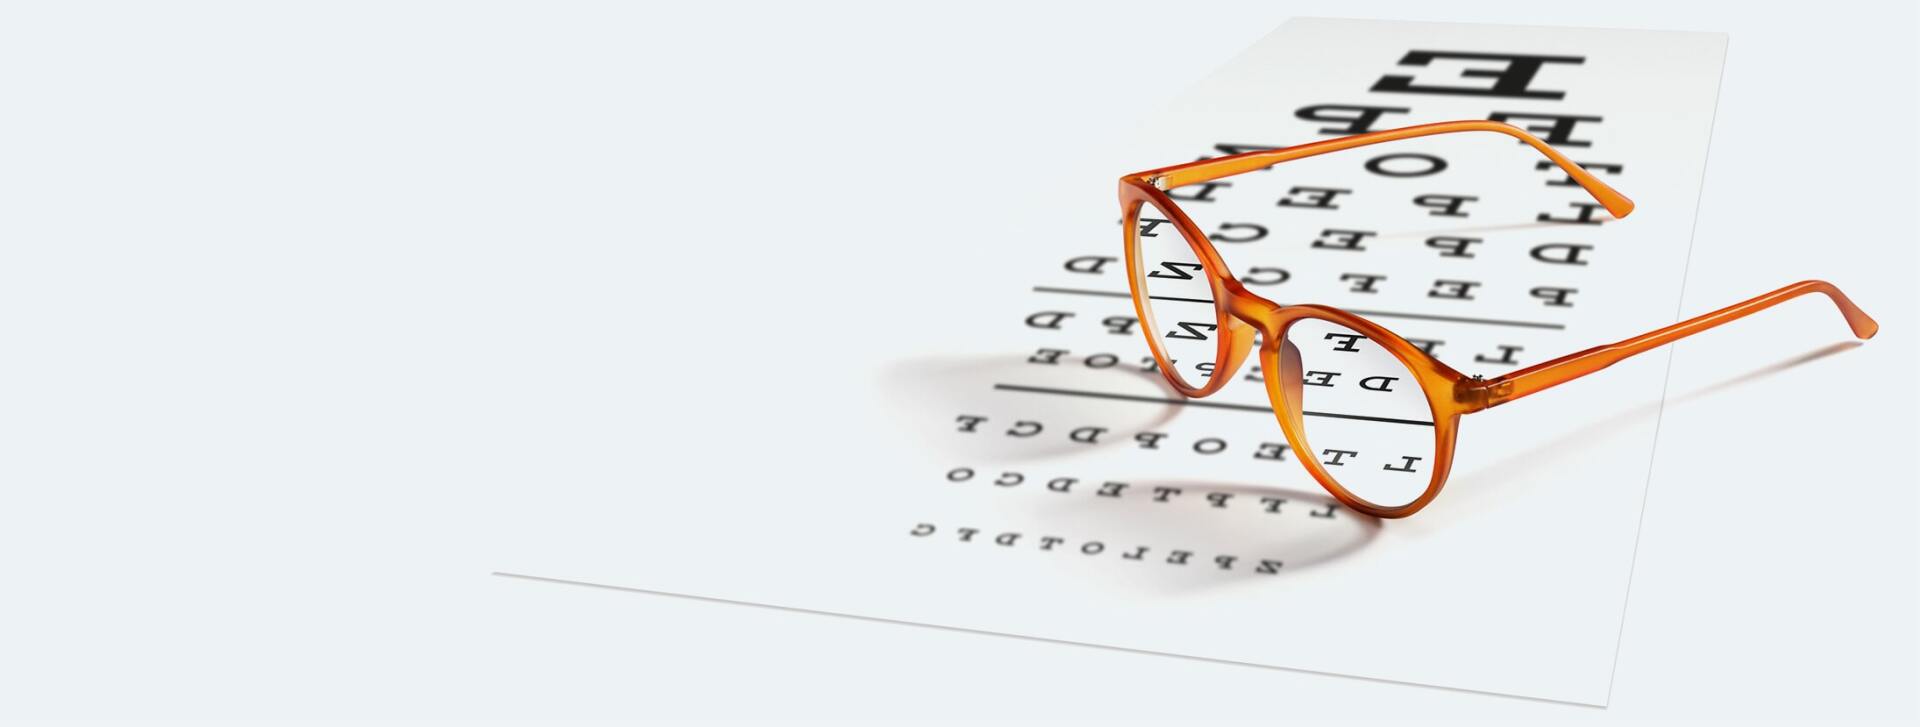 tavola optometrica e occhiali da vista